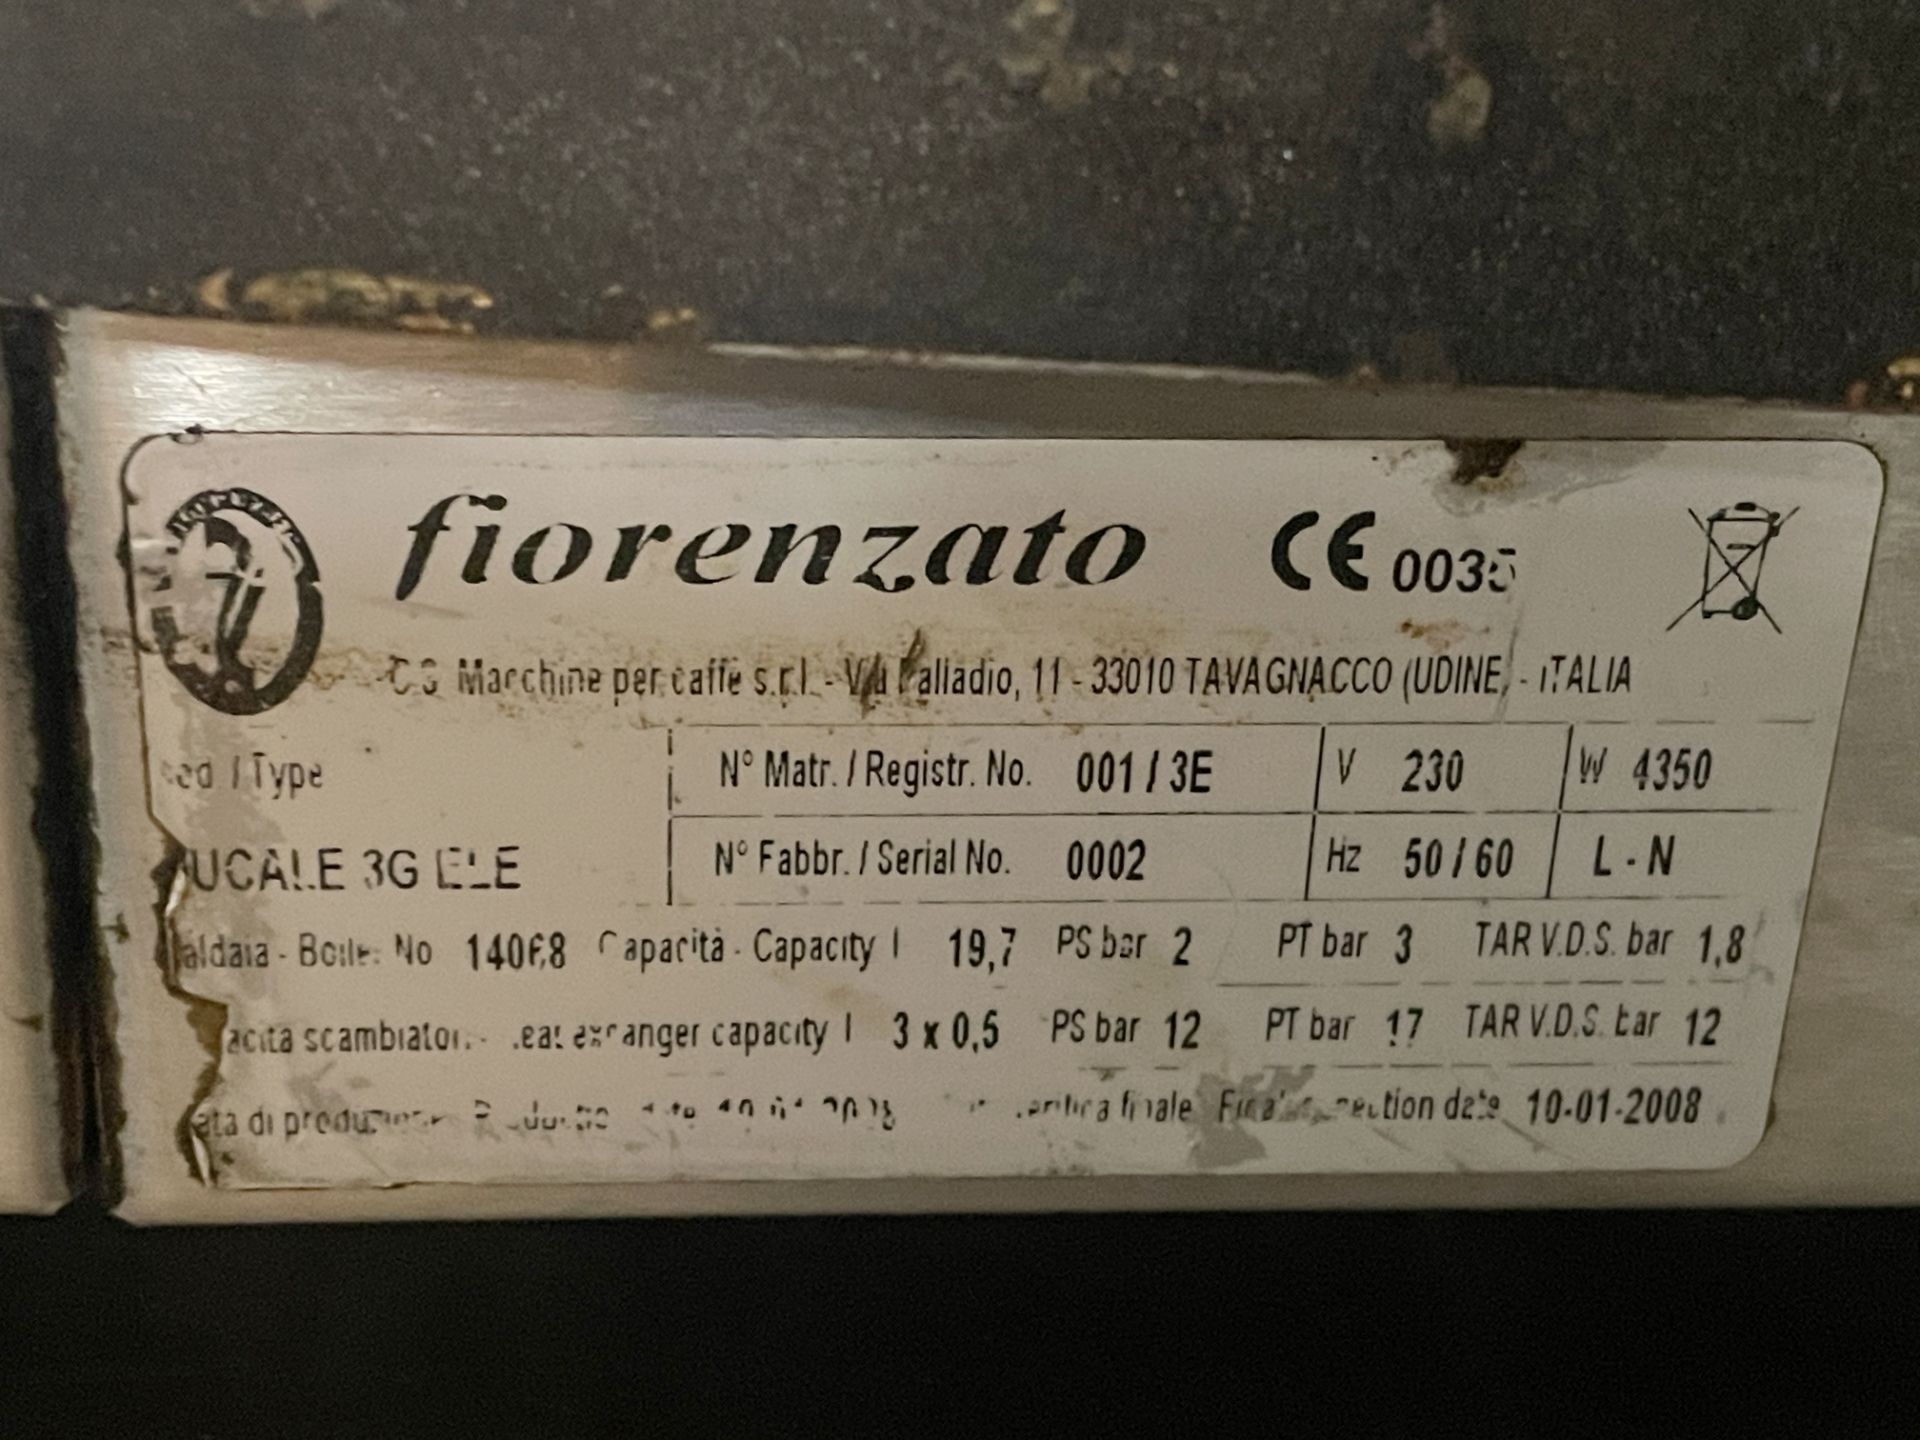 1 x Fiorenzato Ducale 3 Group Espresso Coffee Machine - Image 7 of 10